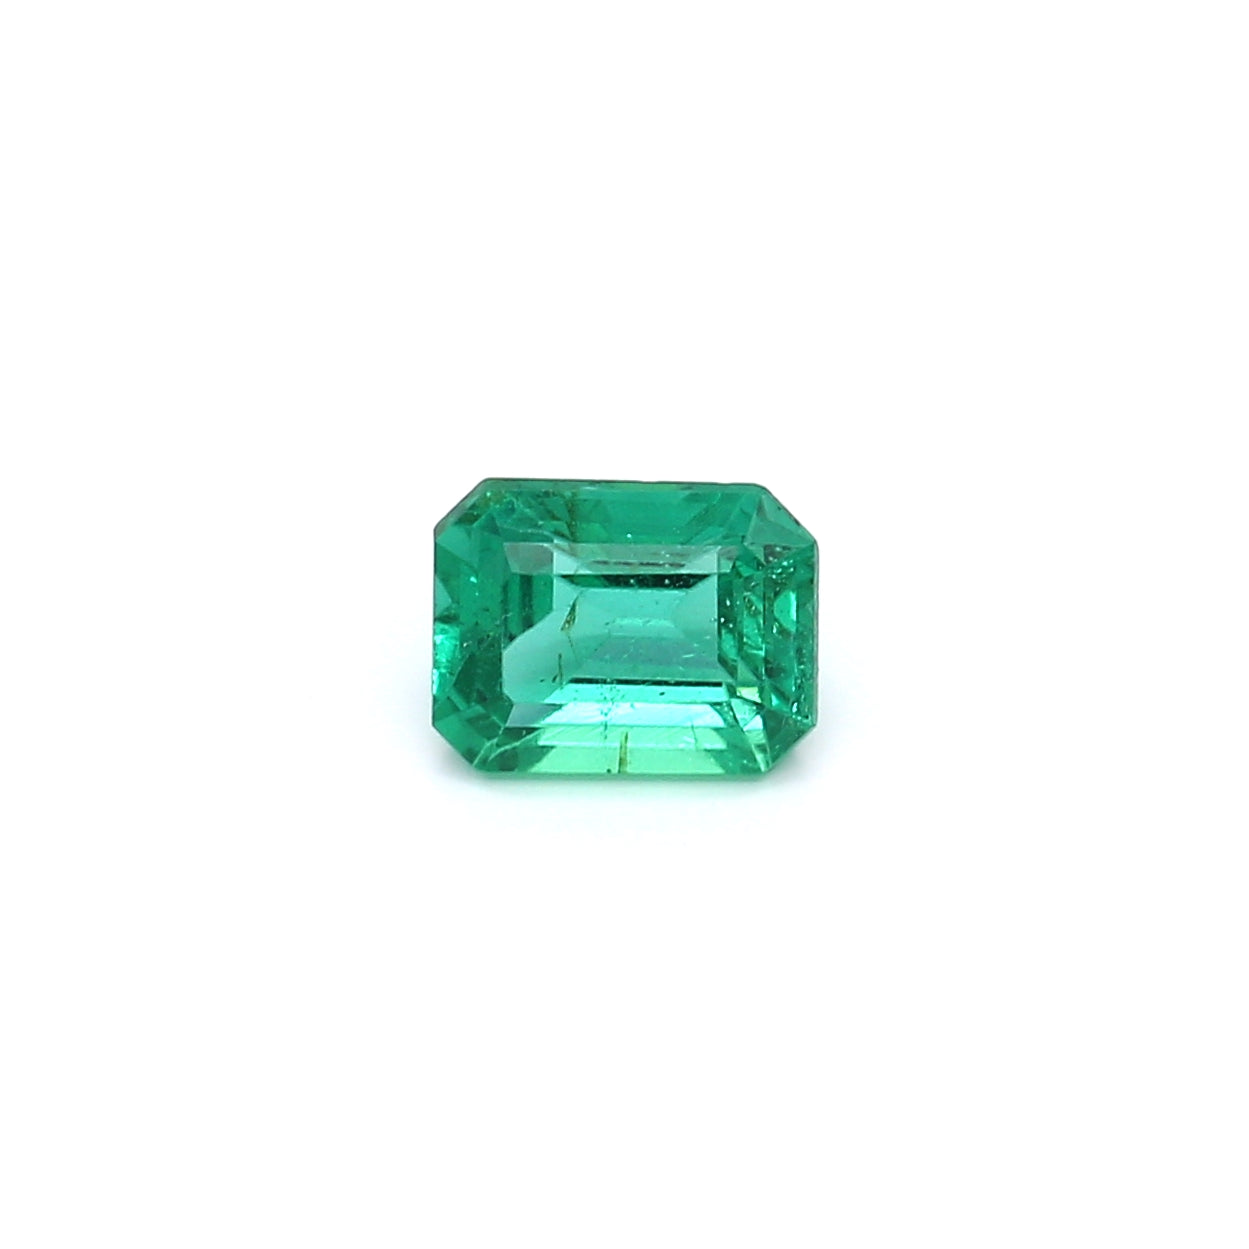 0.96ct Octagon Emerald, Minor Oil, Zambia - 6.79 x 5.19 x 3.89mm